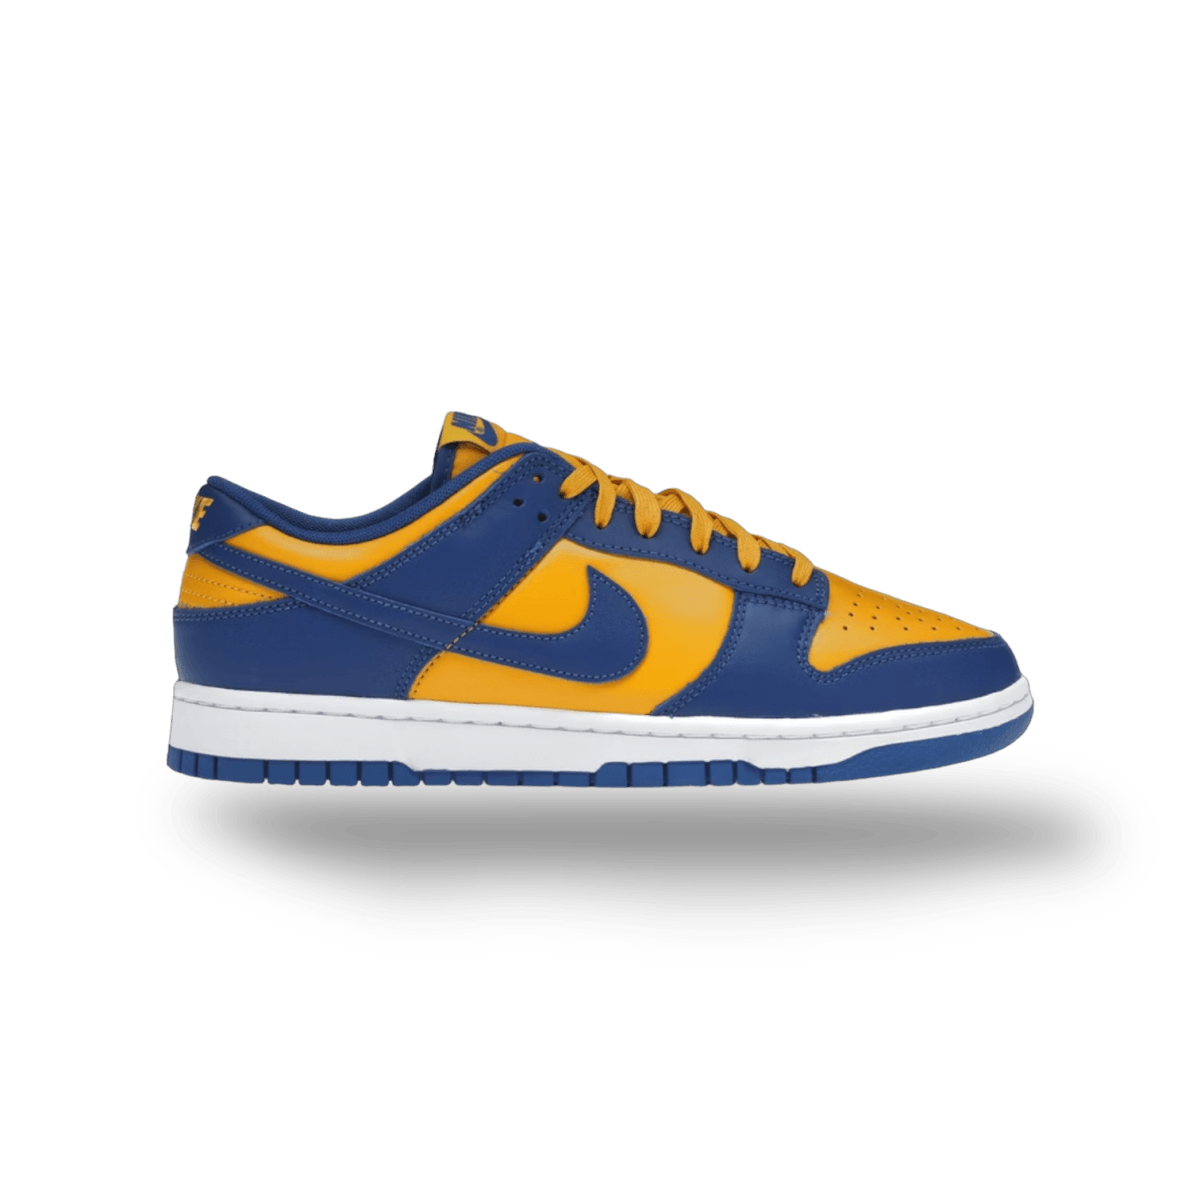 Dunk Low Blue Gold UCLA - Low Sneaker - Jawns on Fire Sneakers & Streetwear